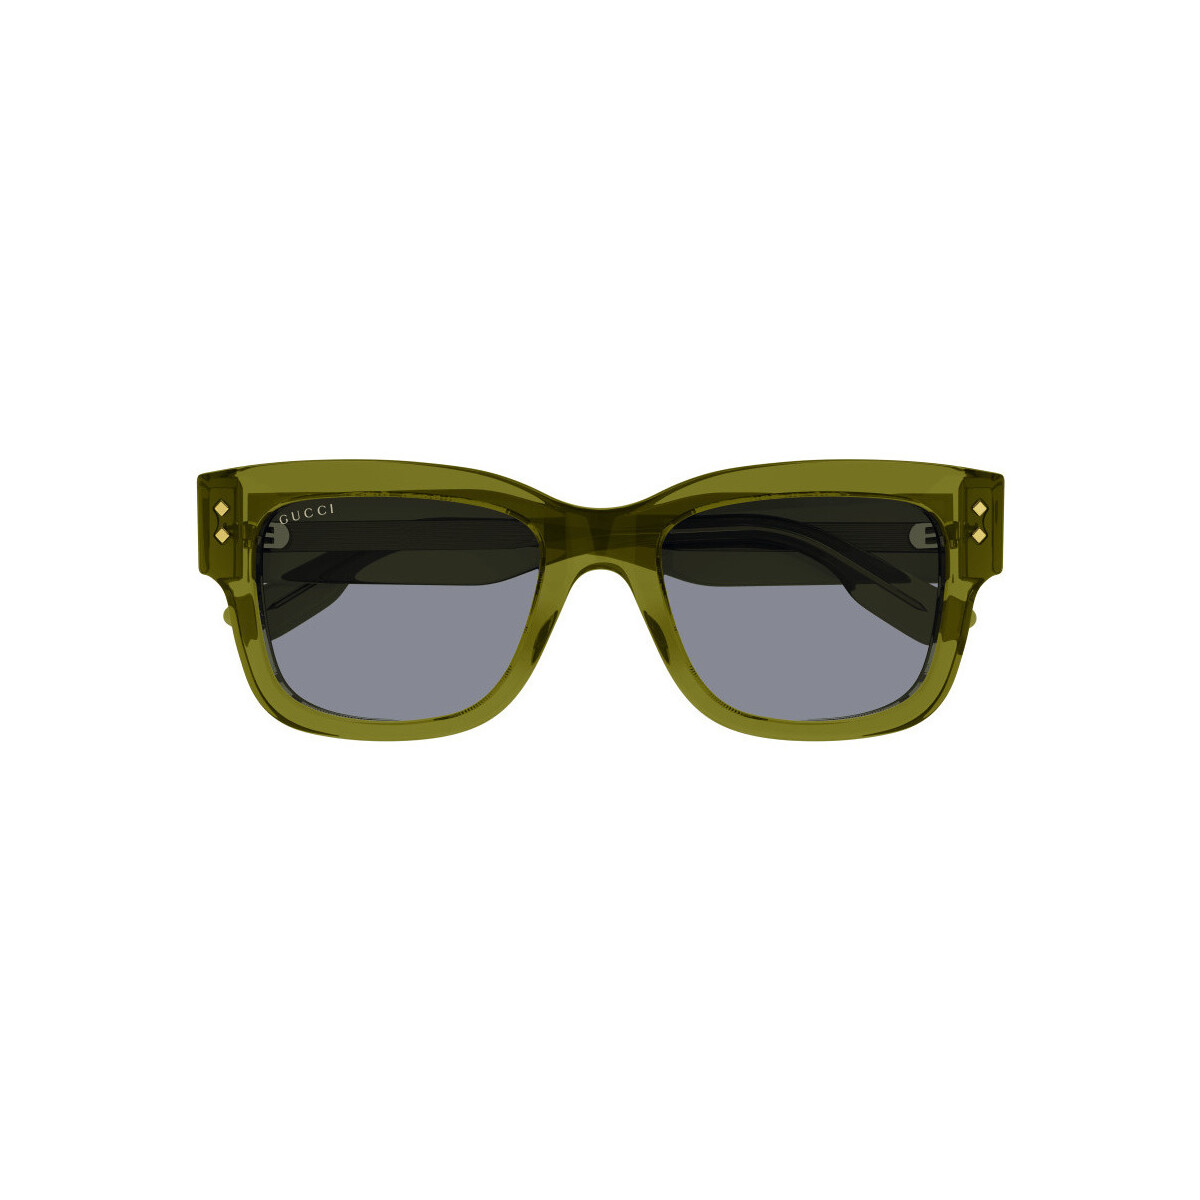 Orologi & Gioielli Uomo Occhiali da sole Gucci GG1217S Occhiali da sole, Verde/Grigio, 53 mm Verde